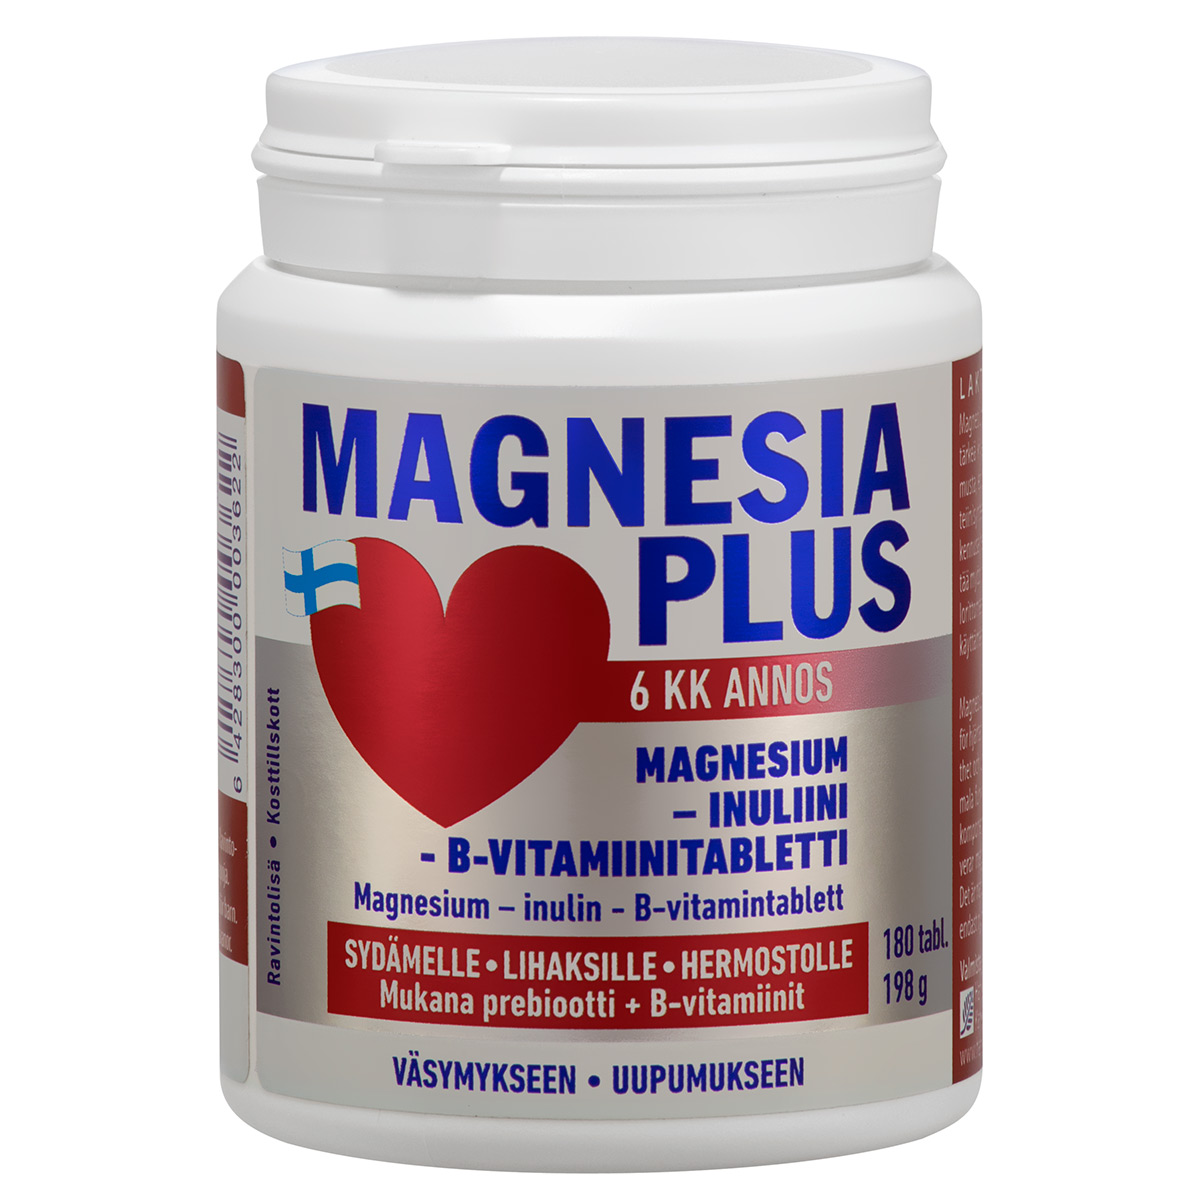 Magnesia PLUS 6kk / annos